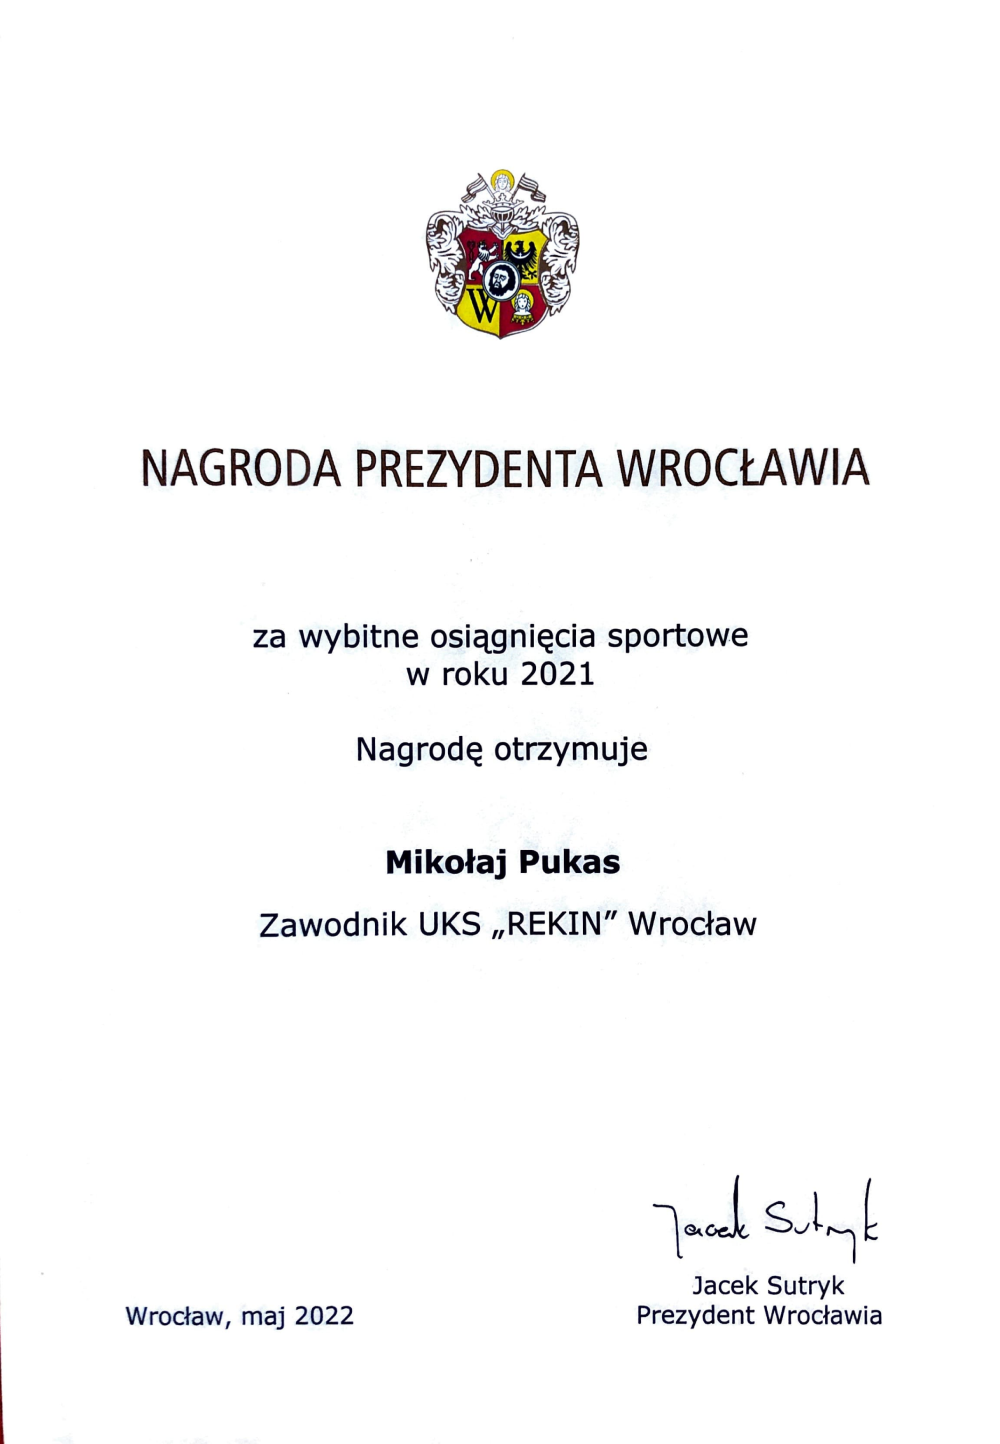 Mikolaj Pukas Nagroda Prezydenta Wroclawia popr 2022.png